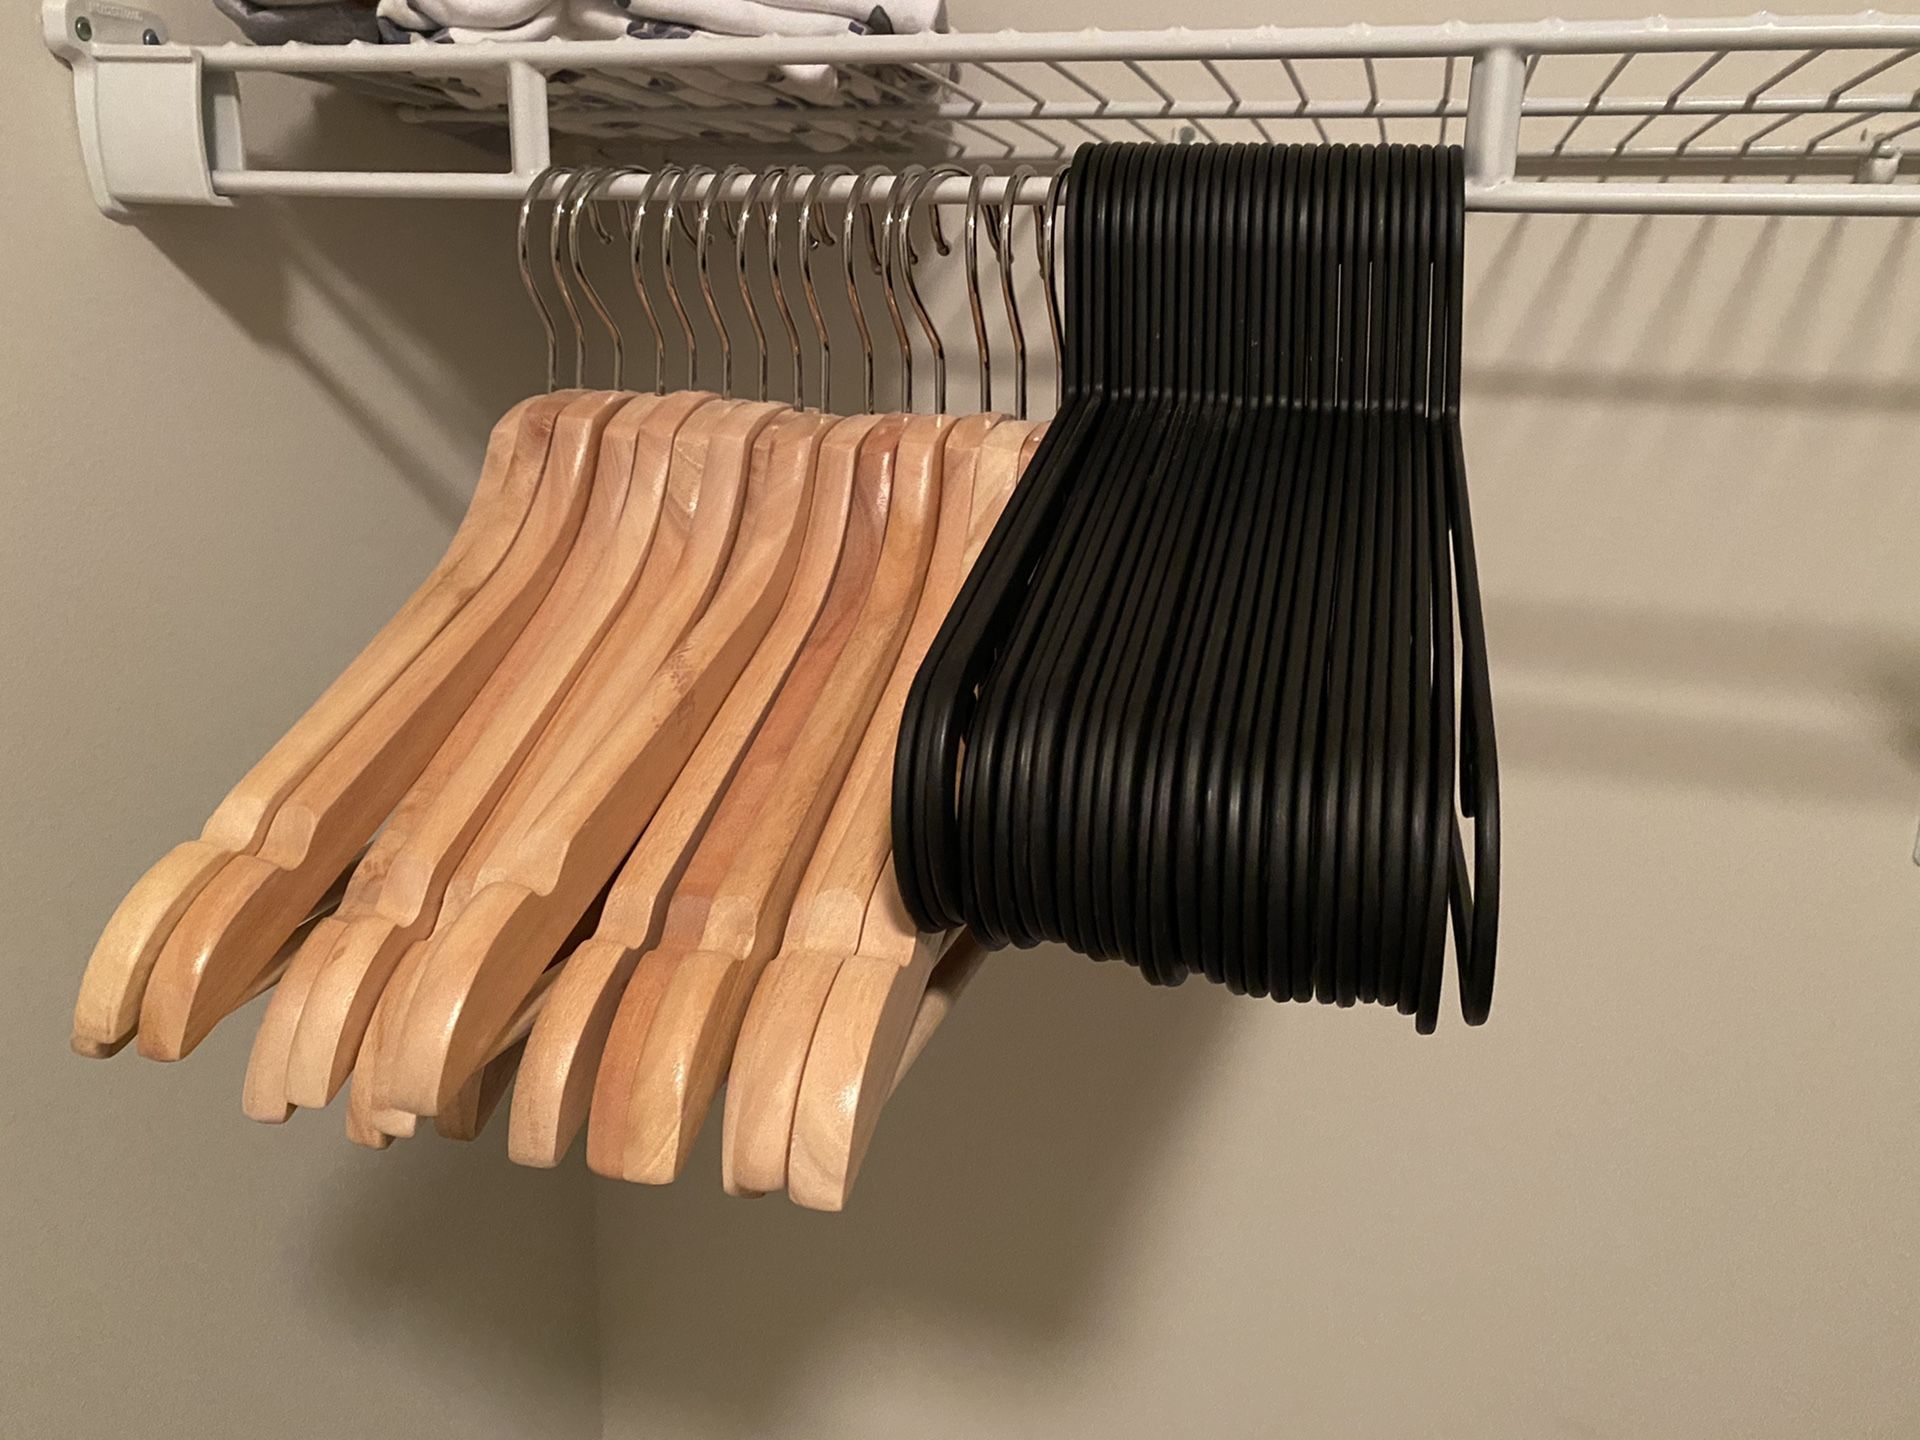 16 Wooden + 50 plastic cloth hangers